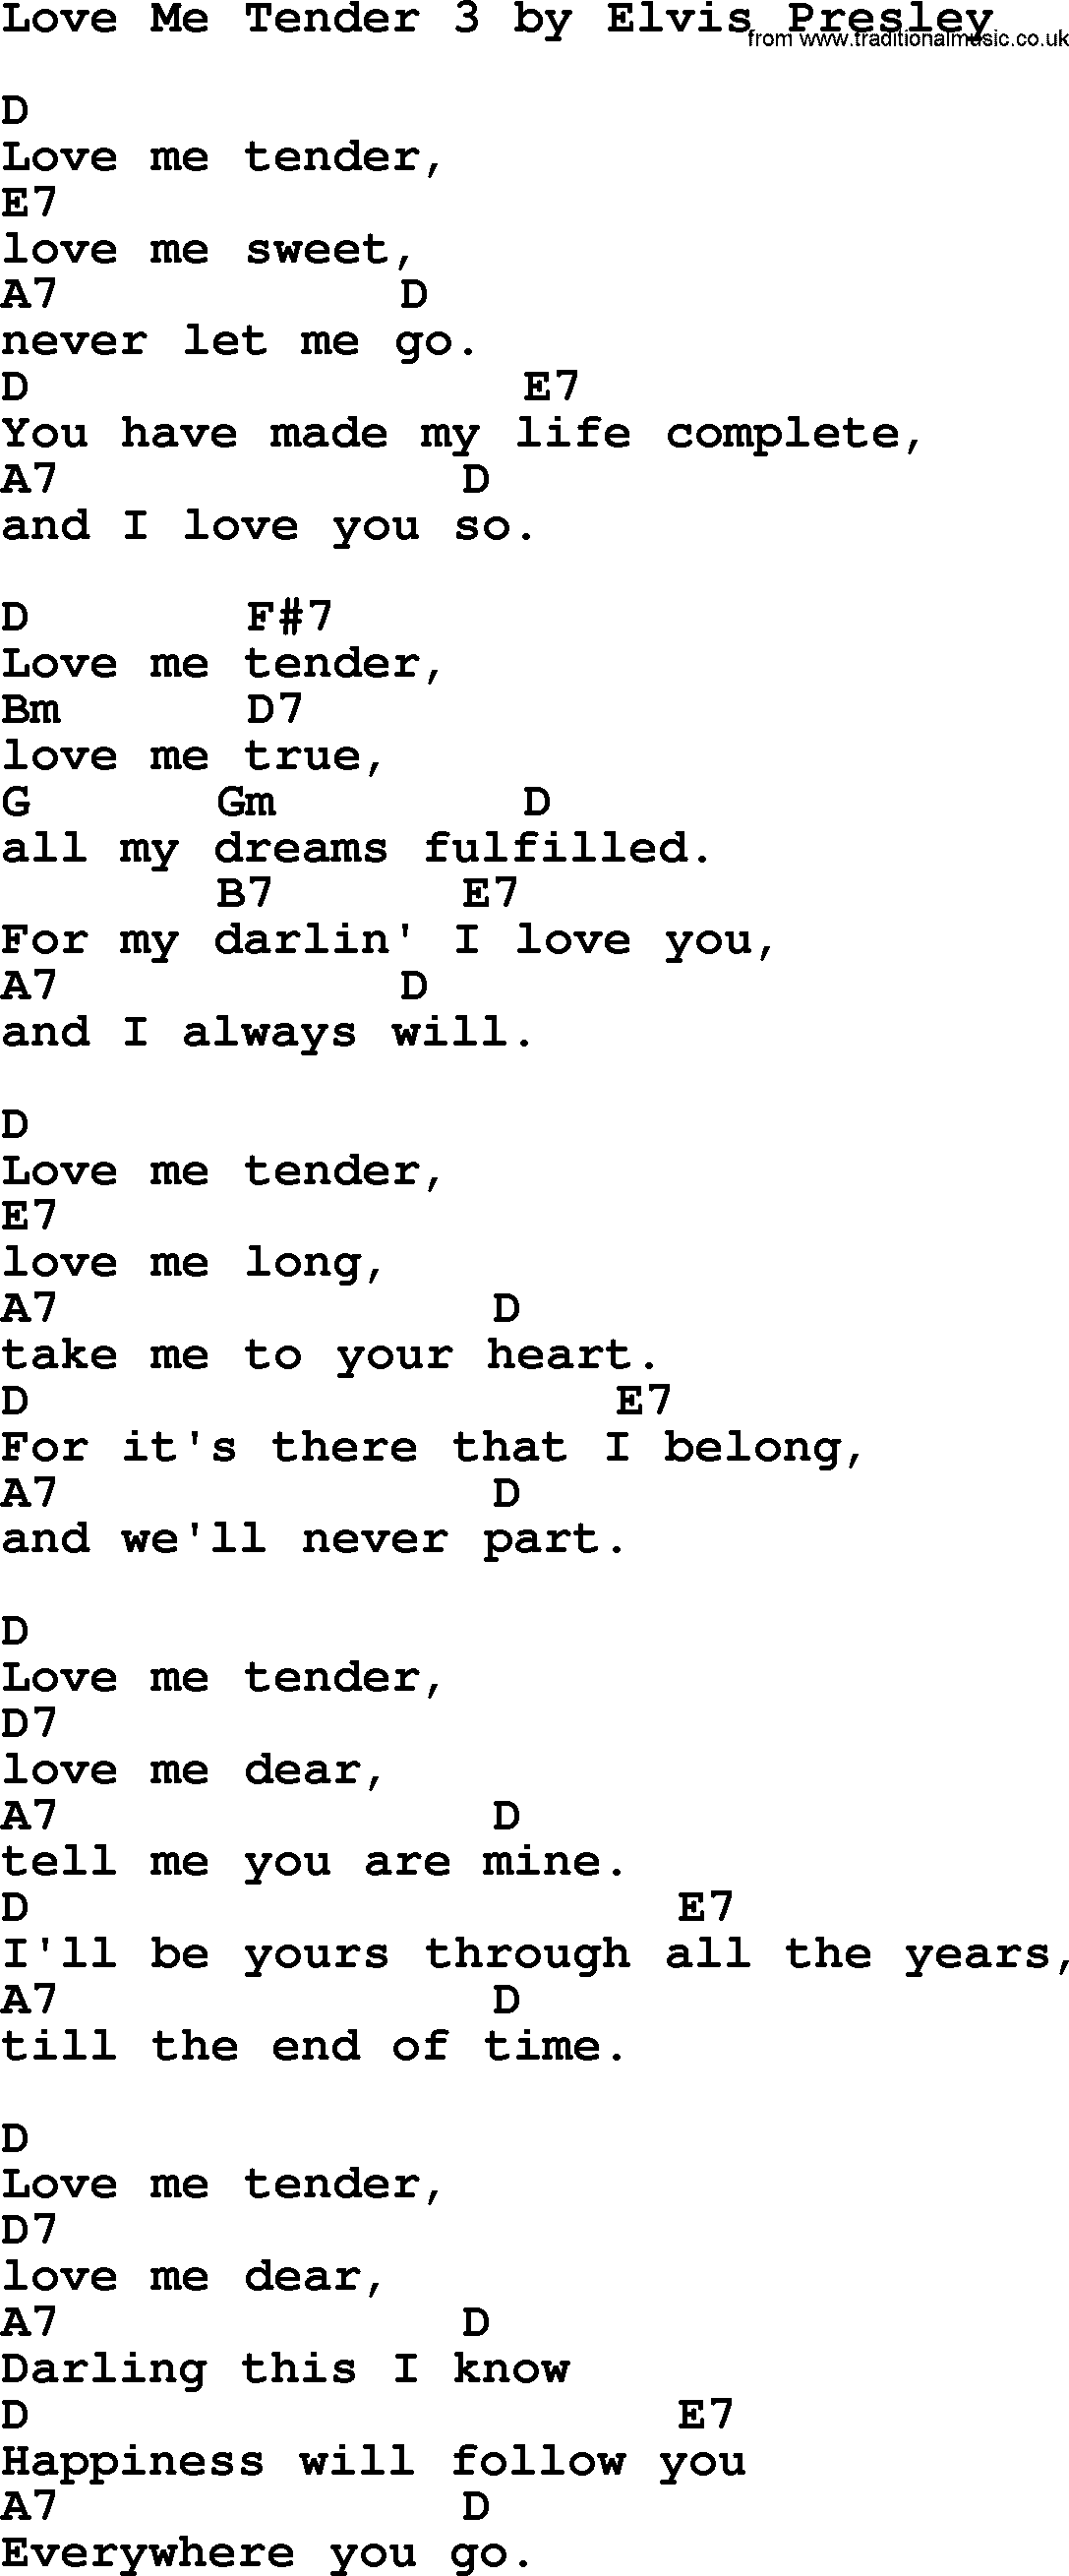 Elvis Presley song: Love Me Tender 3, lyrics and chords